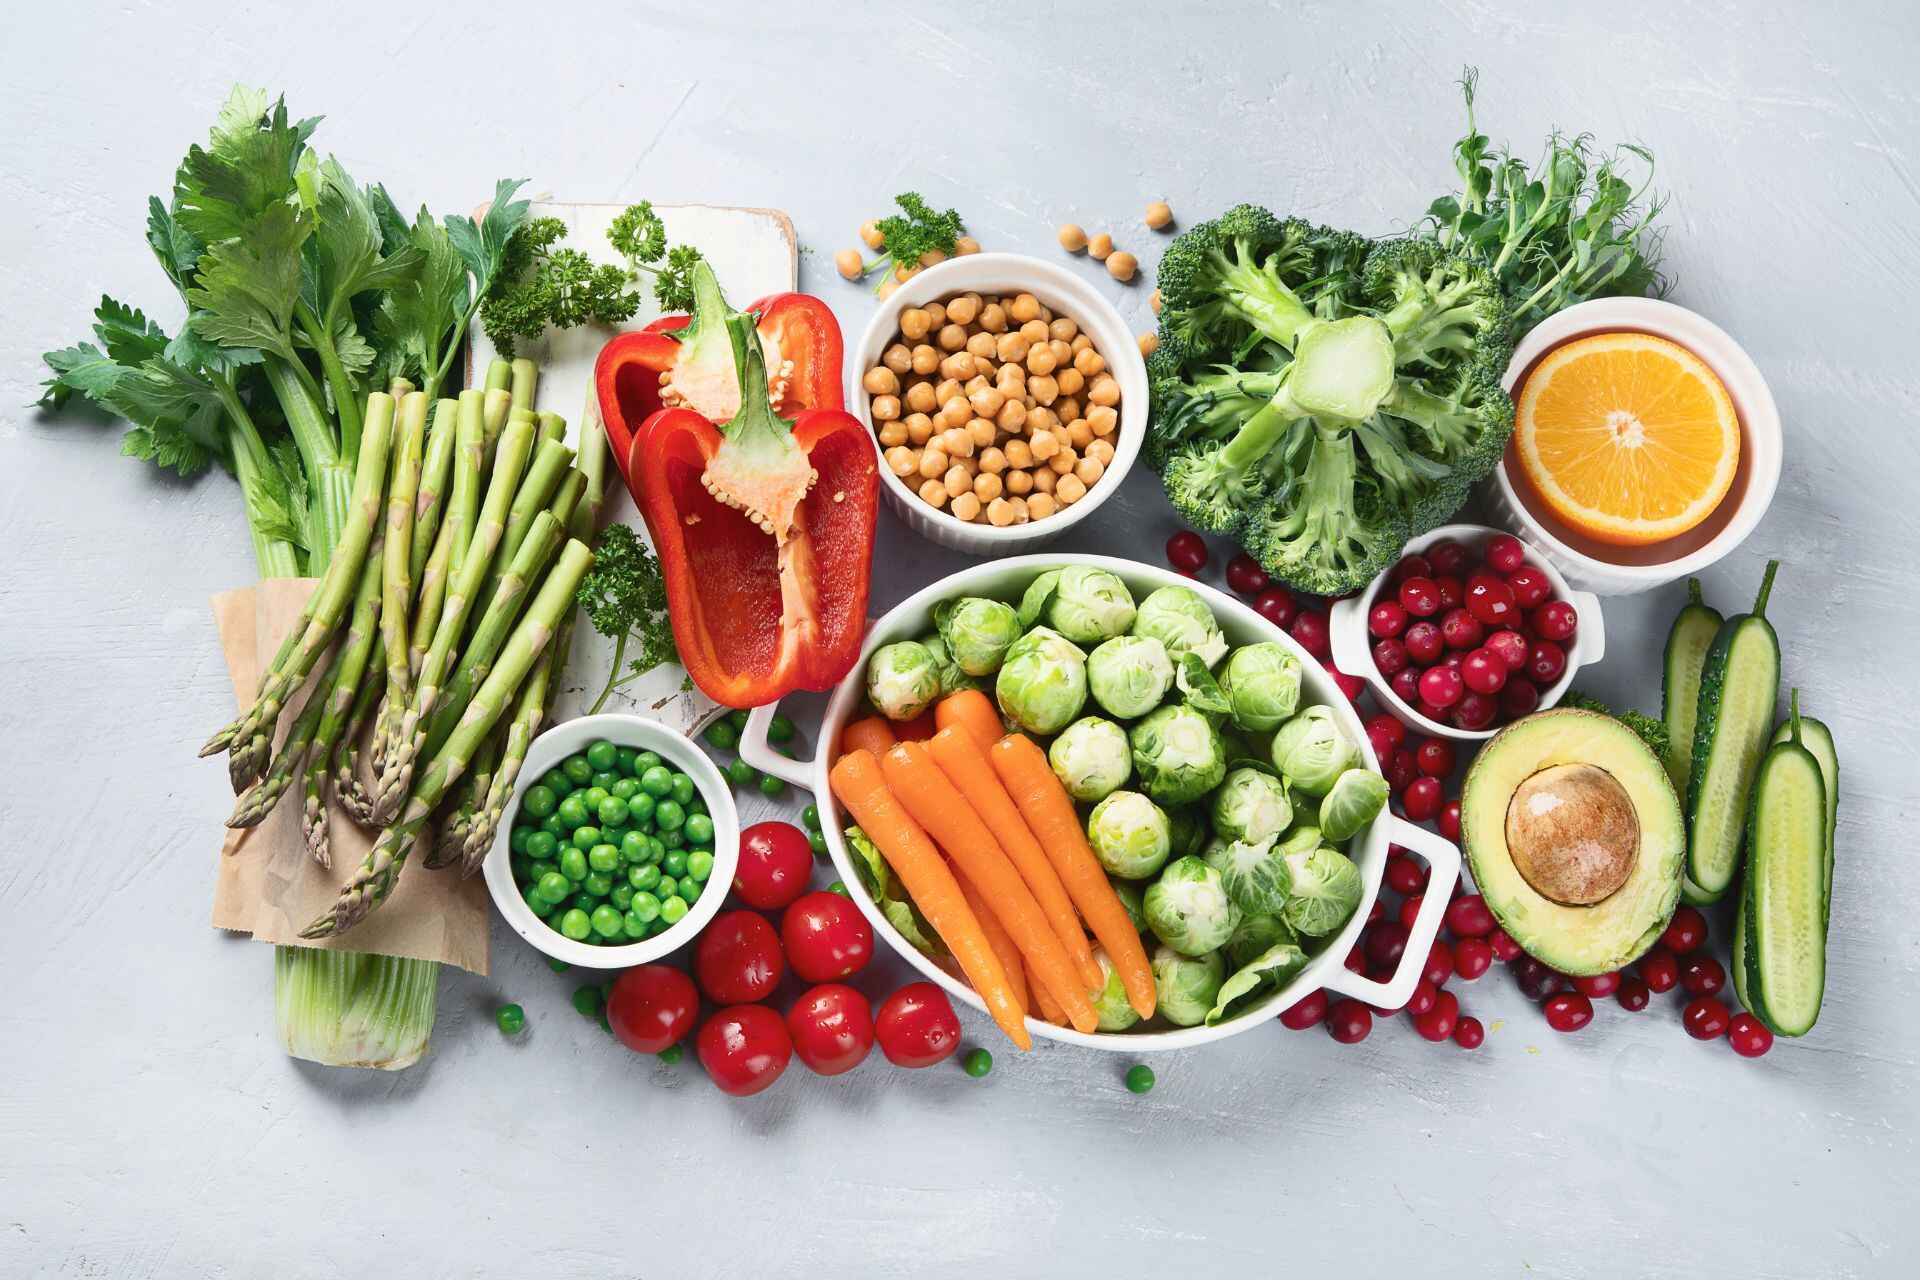 Gepersonaliseerd dieet: de keuze van voedsel is essentieel om af te vallen en gezond te blijven